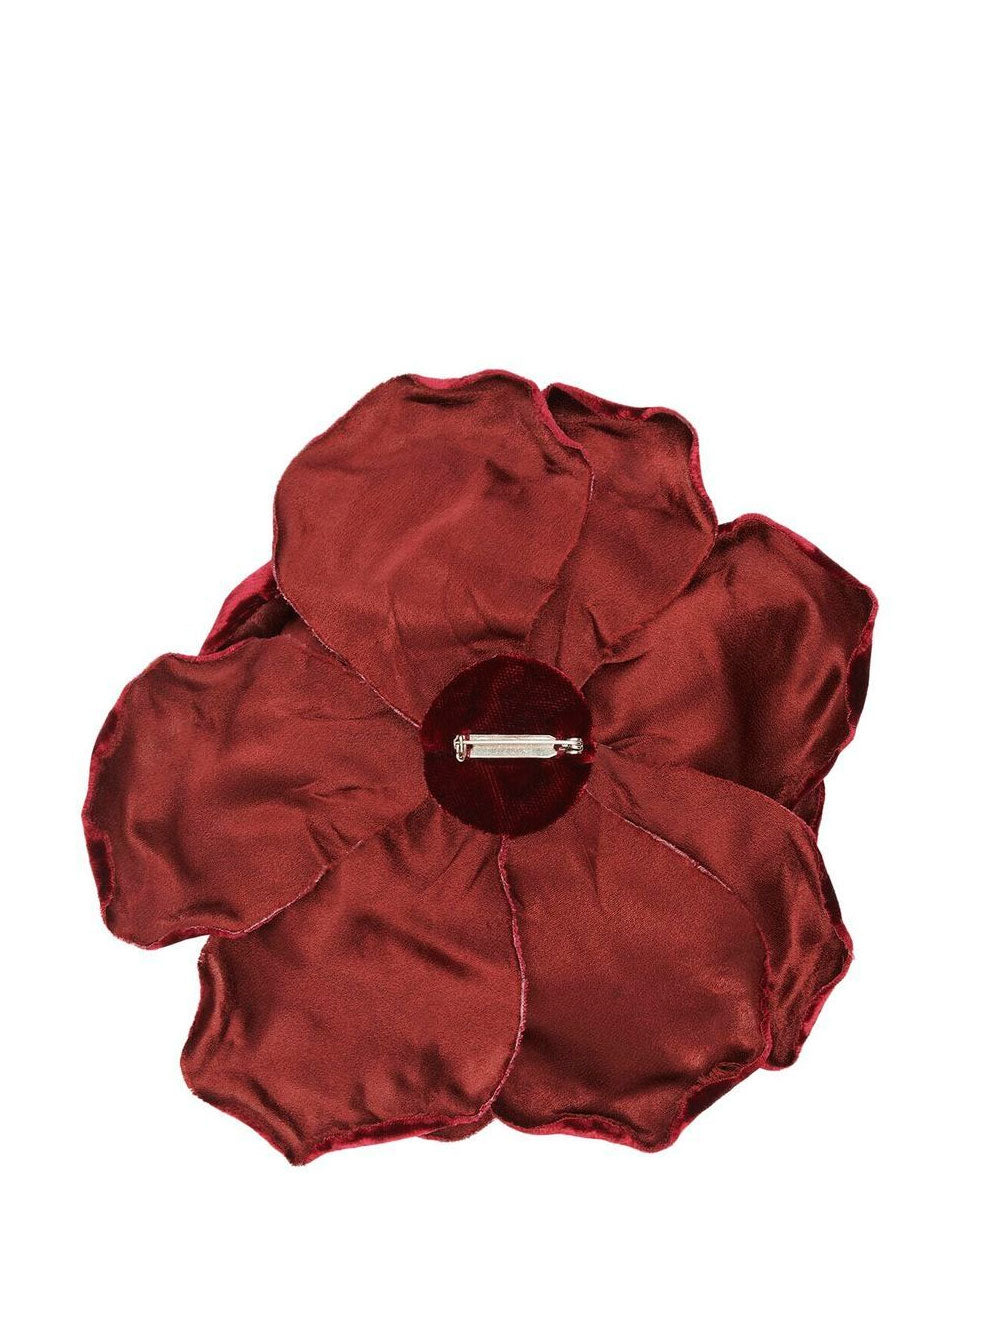 Velvet rose brooch